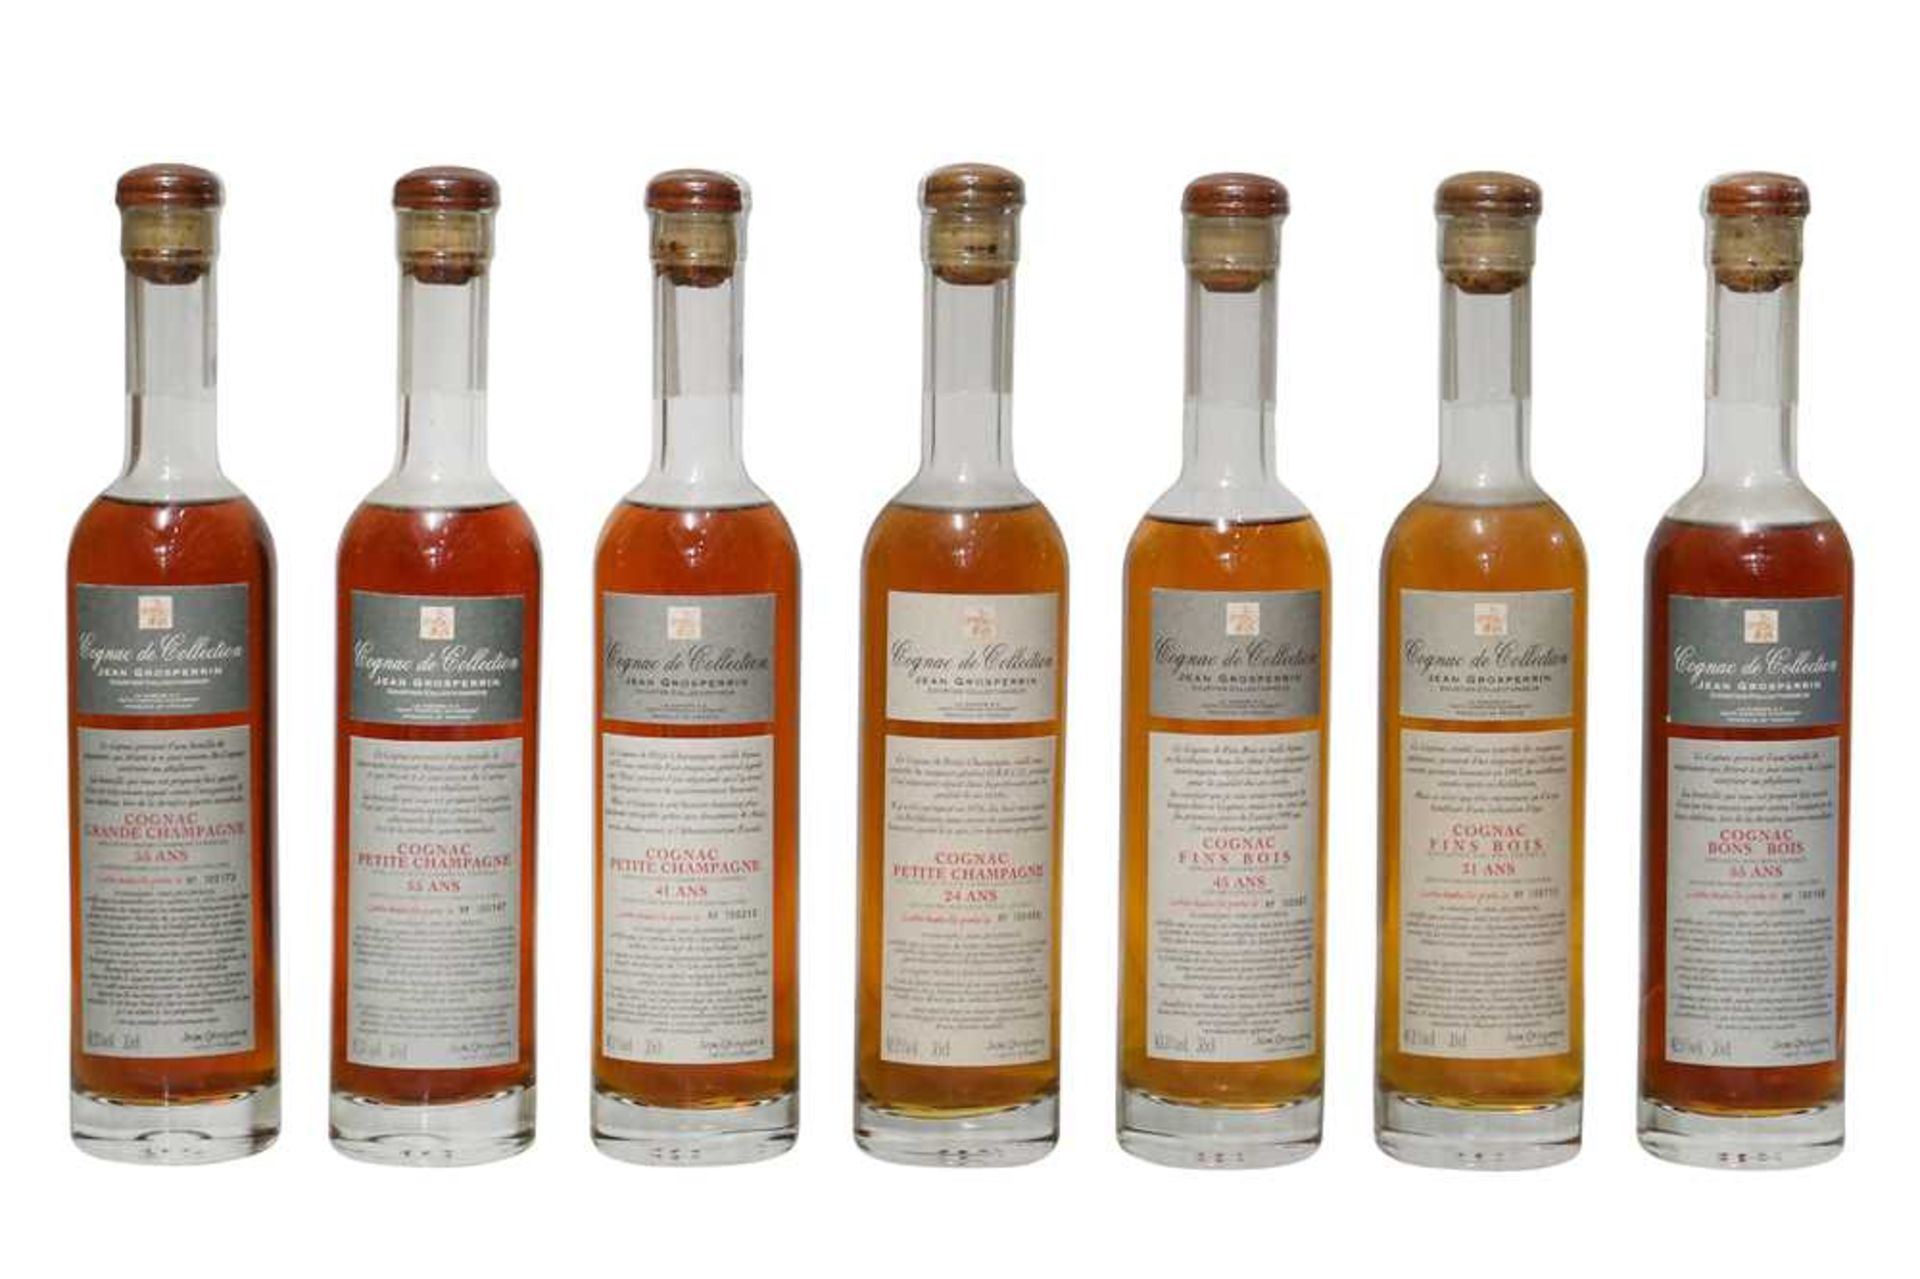 Assorted Half-Bottles of Jean Grosperrin Cognac